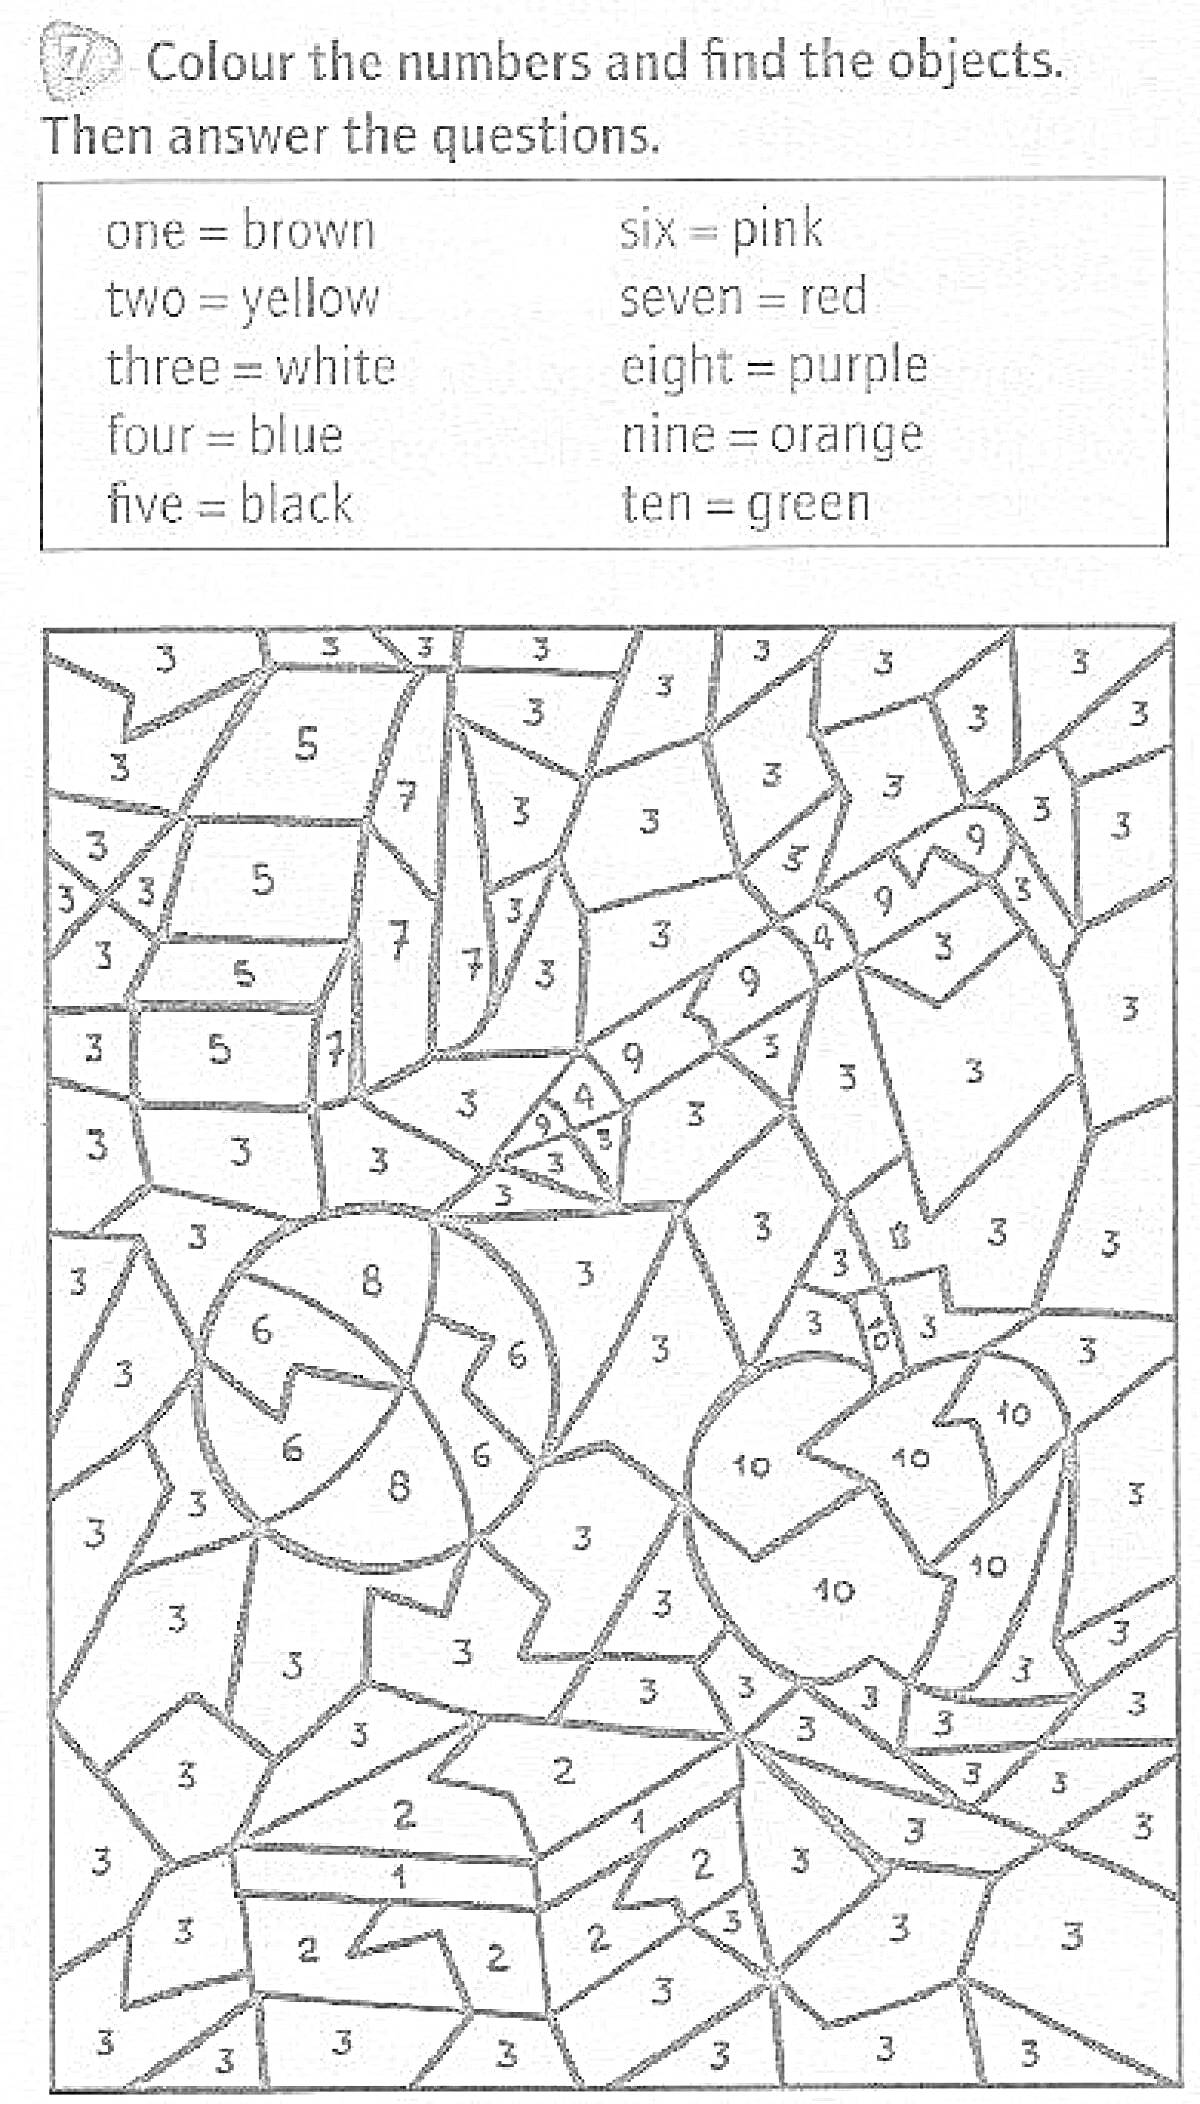 Раскраска Раскраска с заданиями на тему английского языка: раскрасьте по номерам и найдите объекты (цвета и числа)